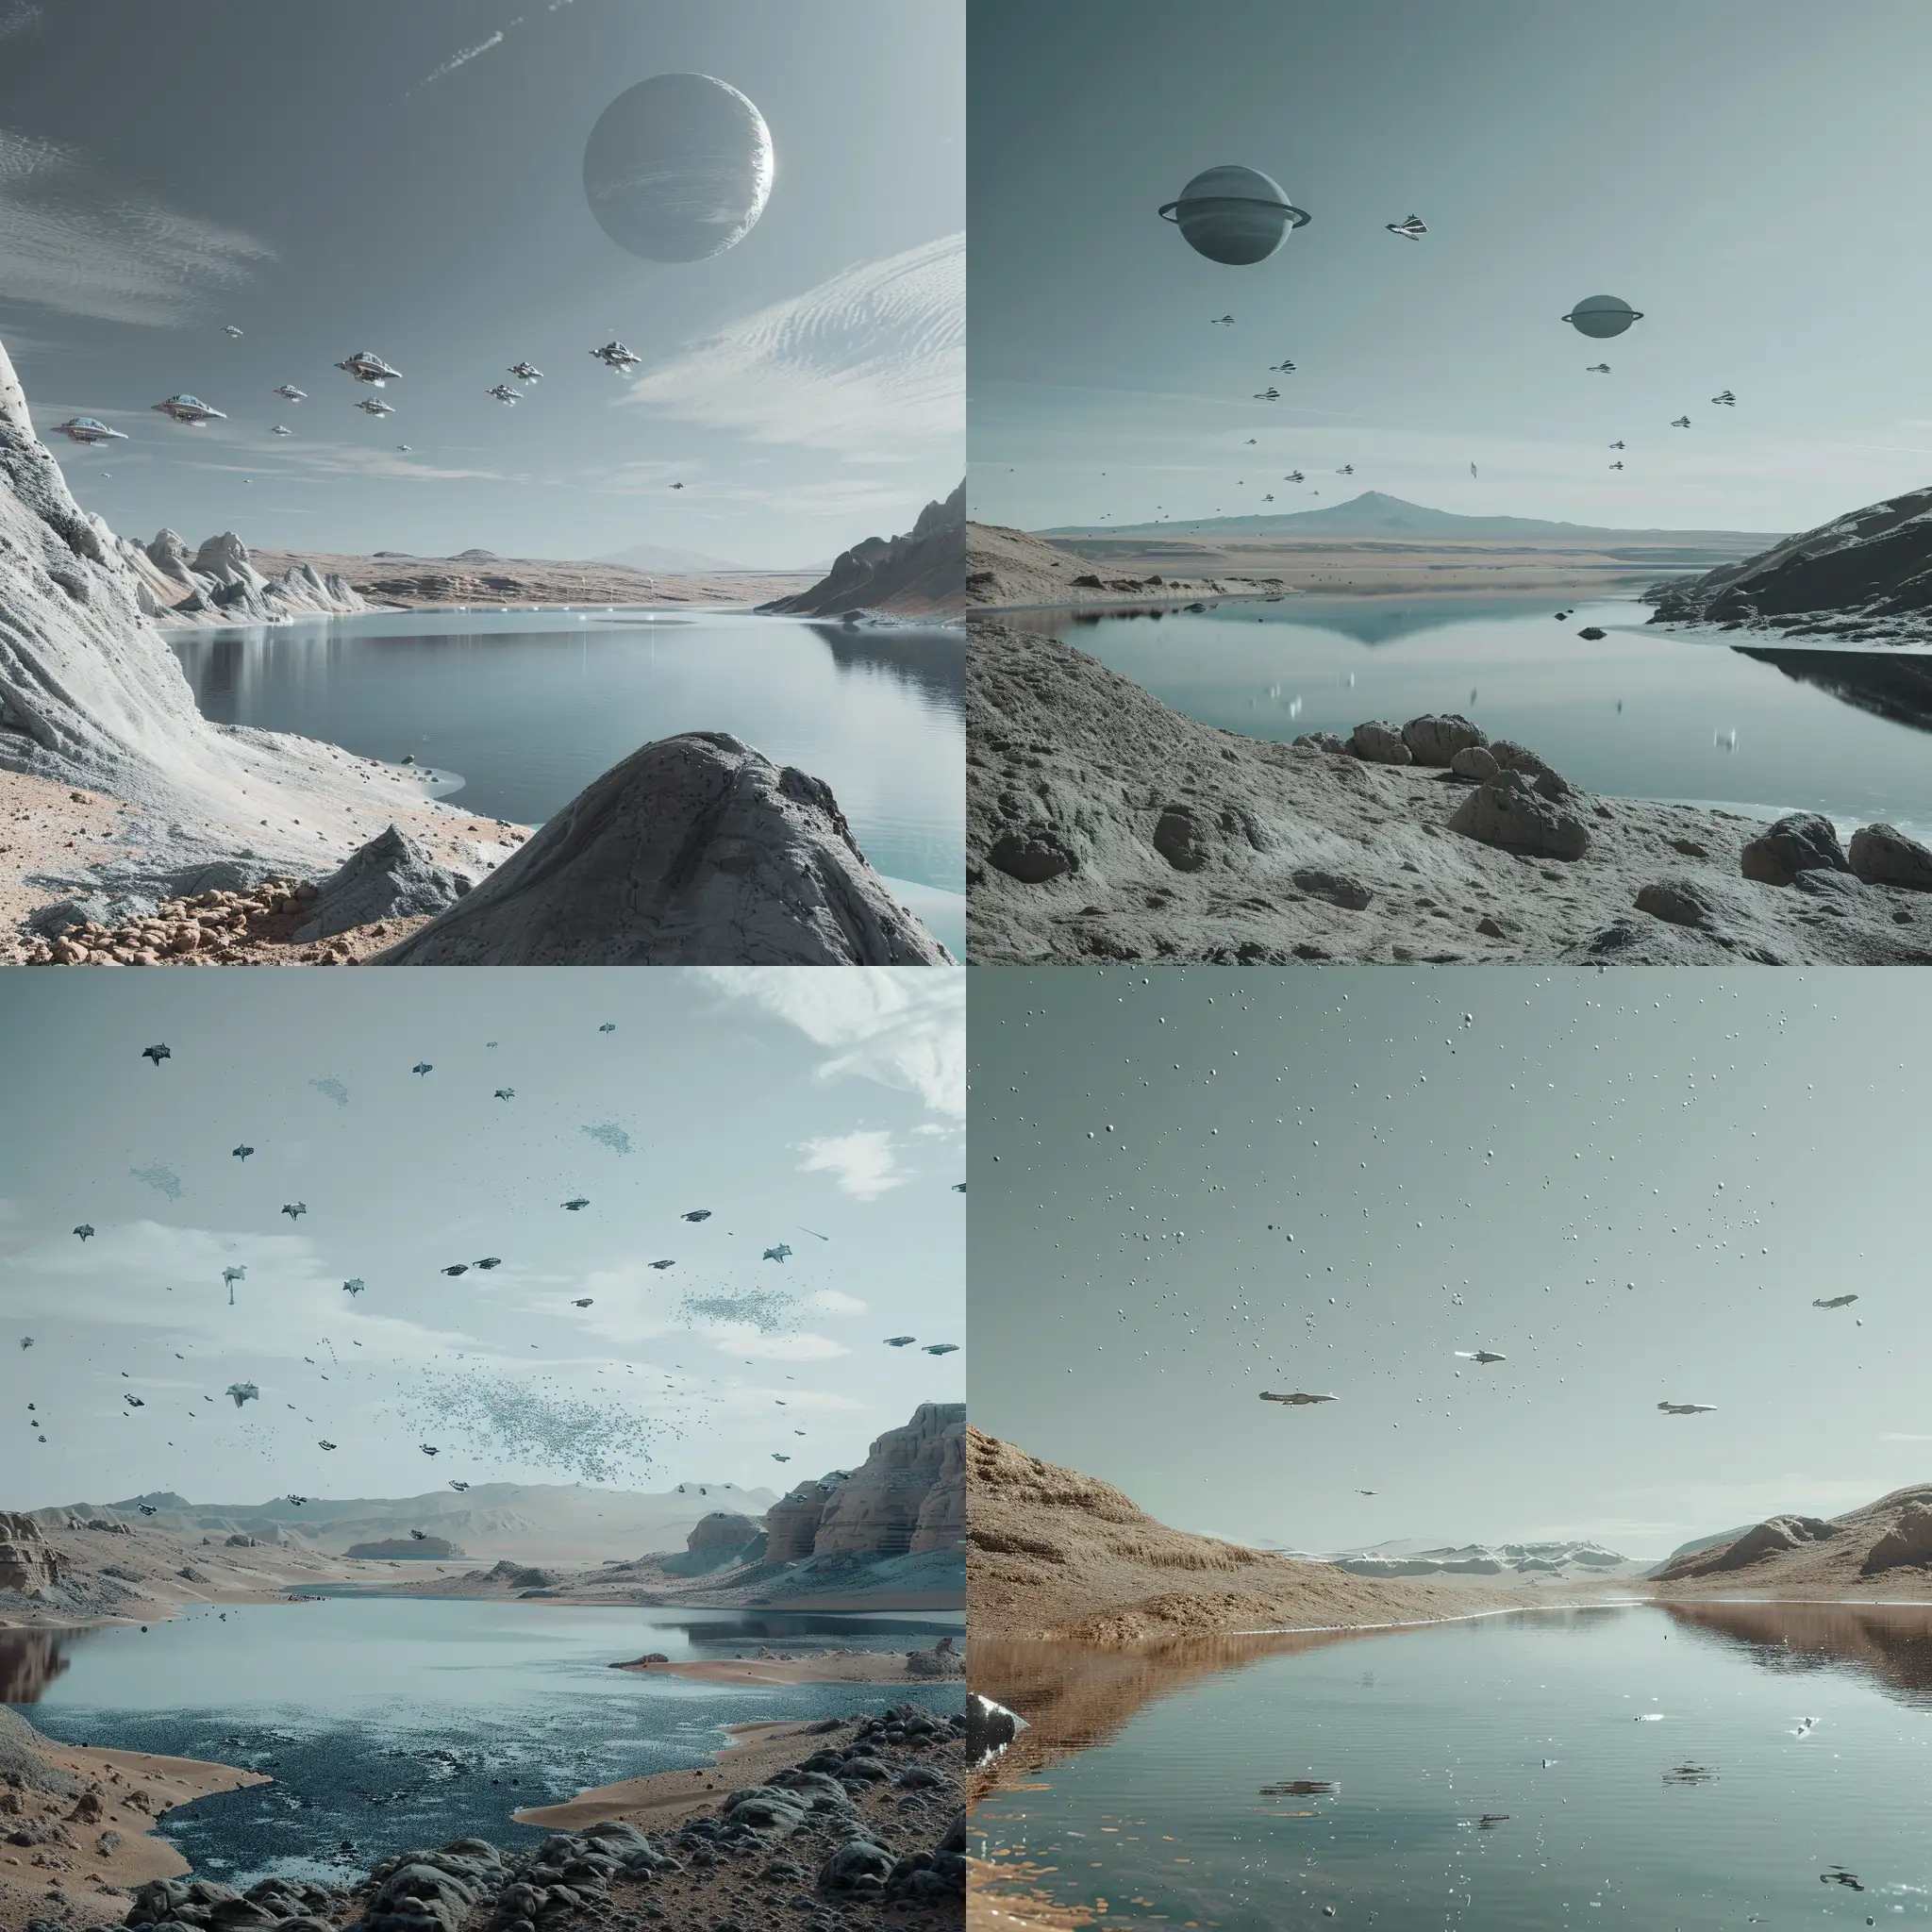  Фантастическая планета в стилистике фильма Дюна, космический пейзаж, серо-голубое небо, озеро,  на небе космические корабли, 8k, плёночная фотография, ультодетализация, рассеяние света, резкий фокус, высокая детализация 